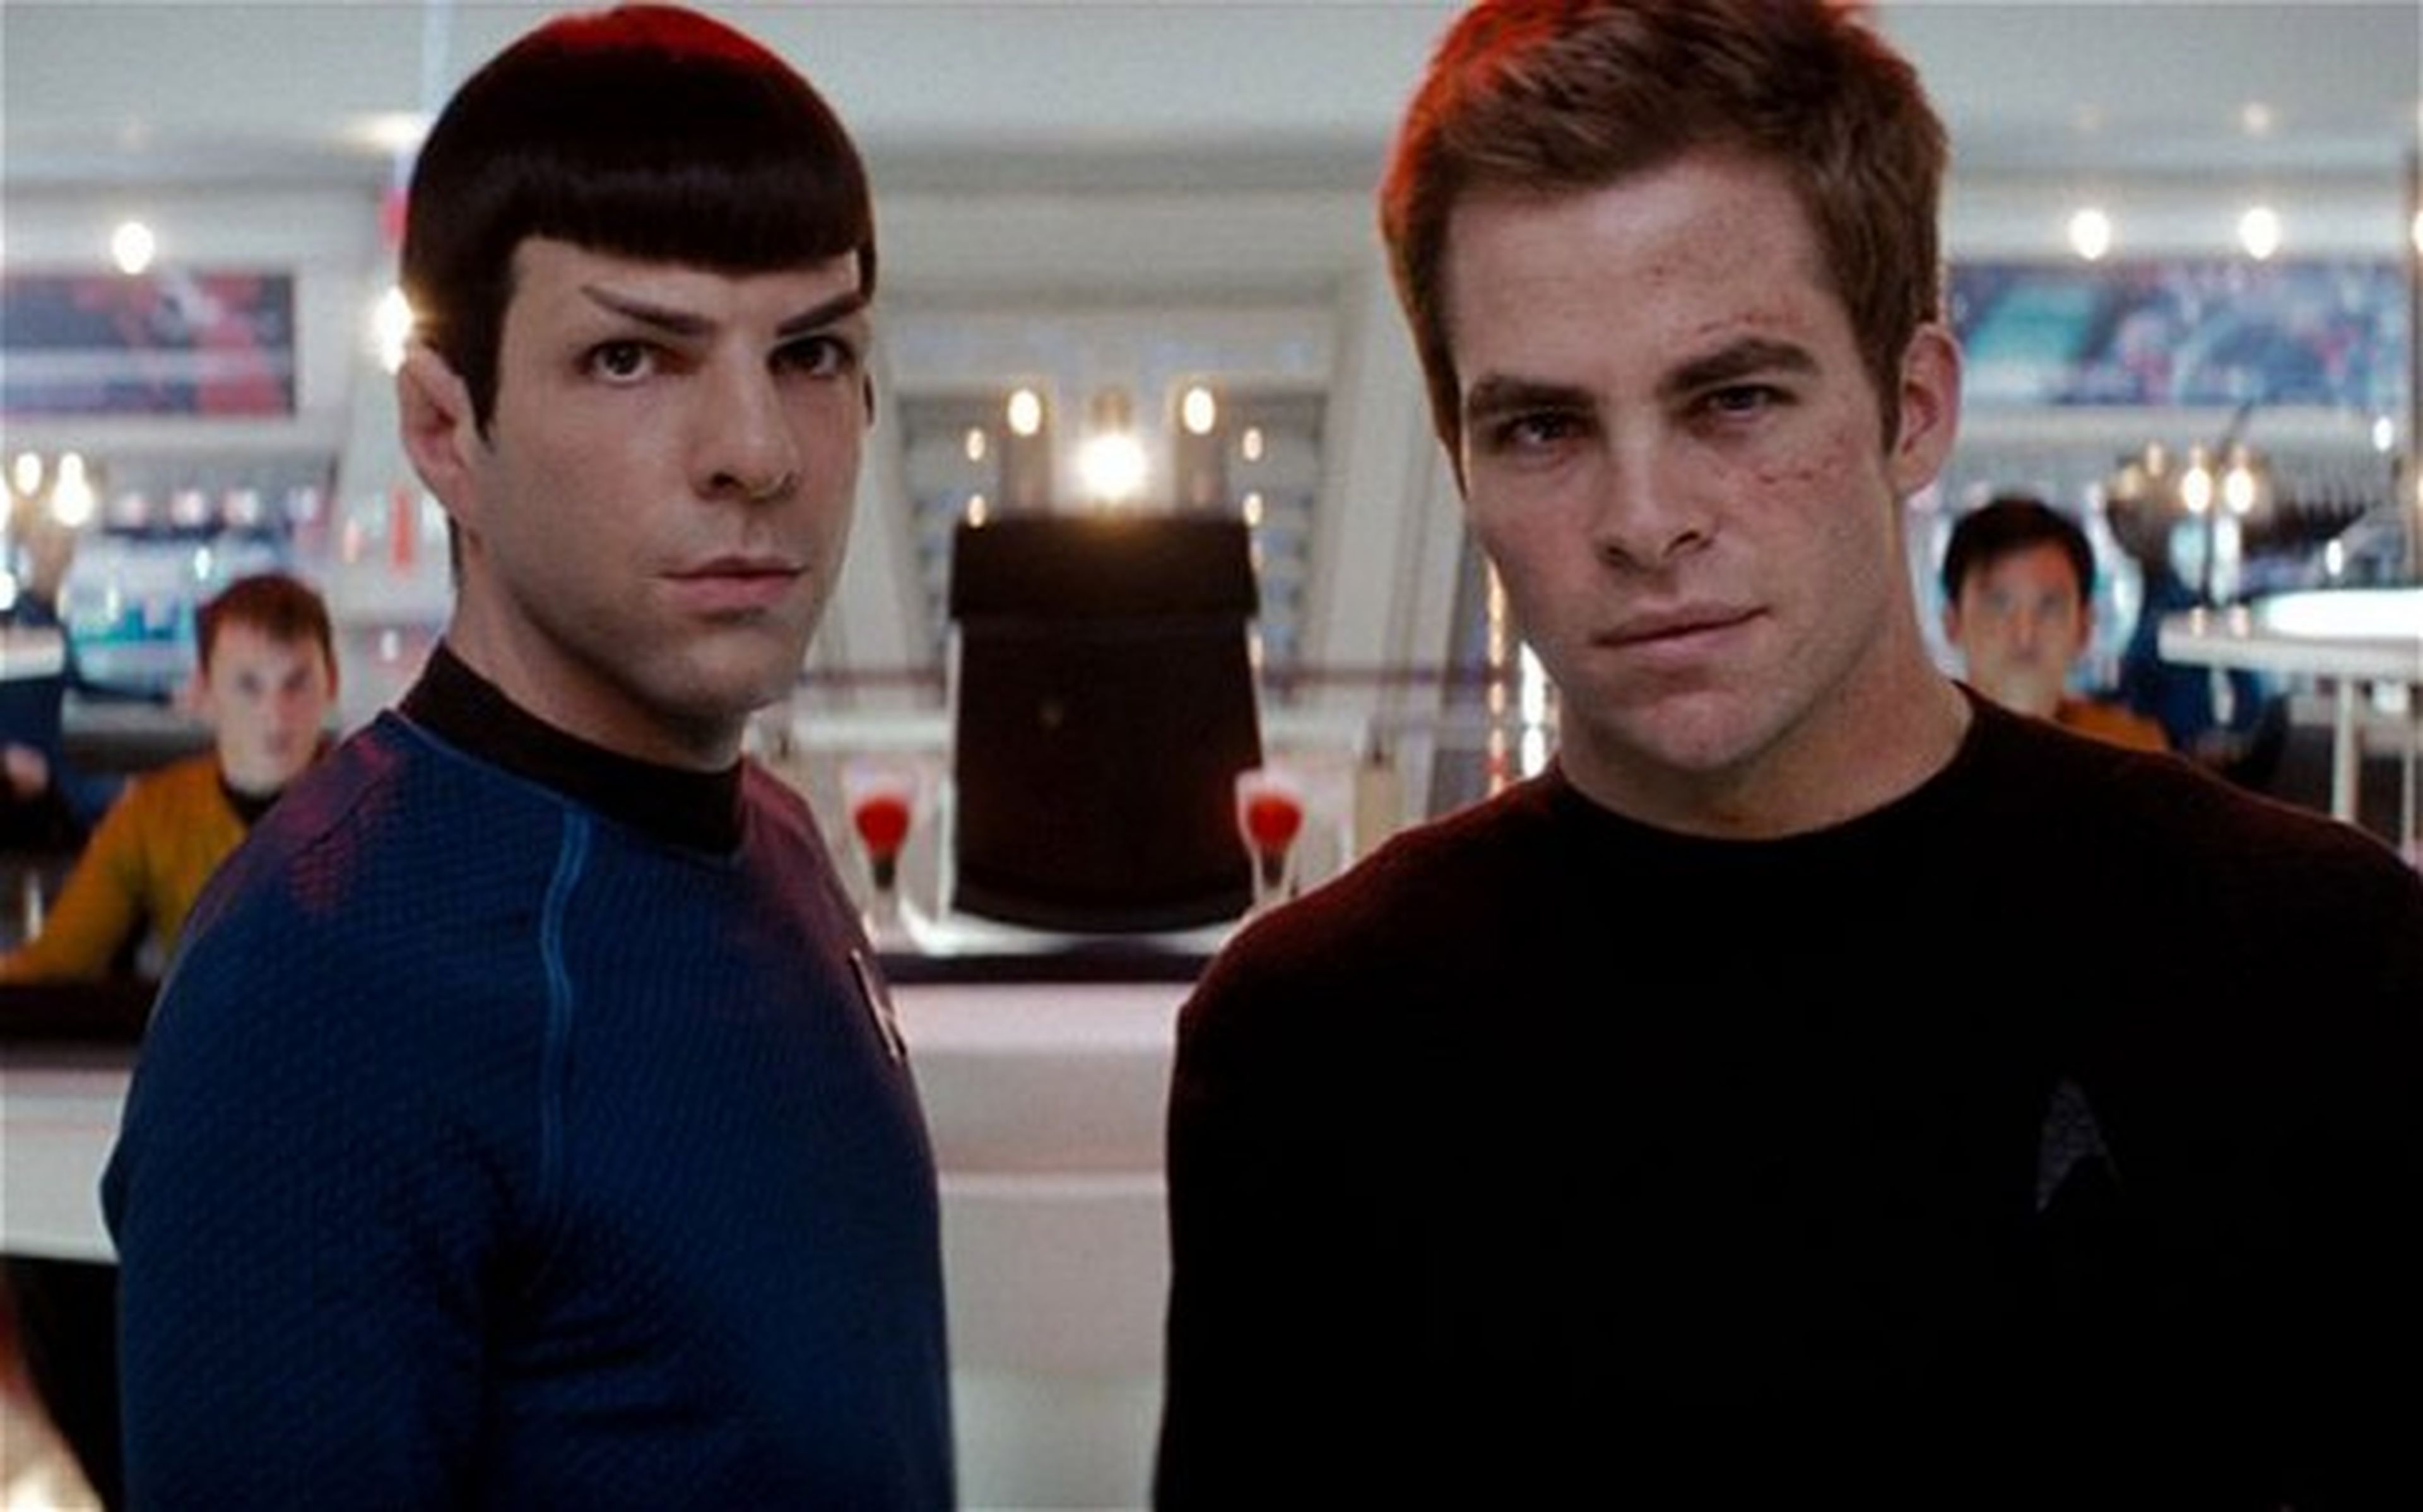 Cine de ciencia ficción: Crítica de Star Trek (2009)